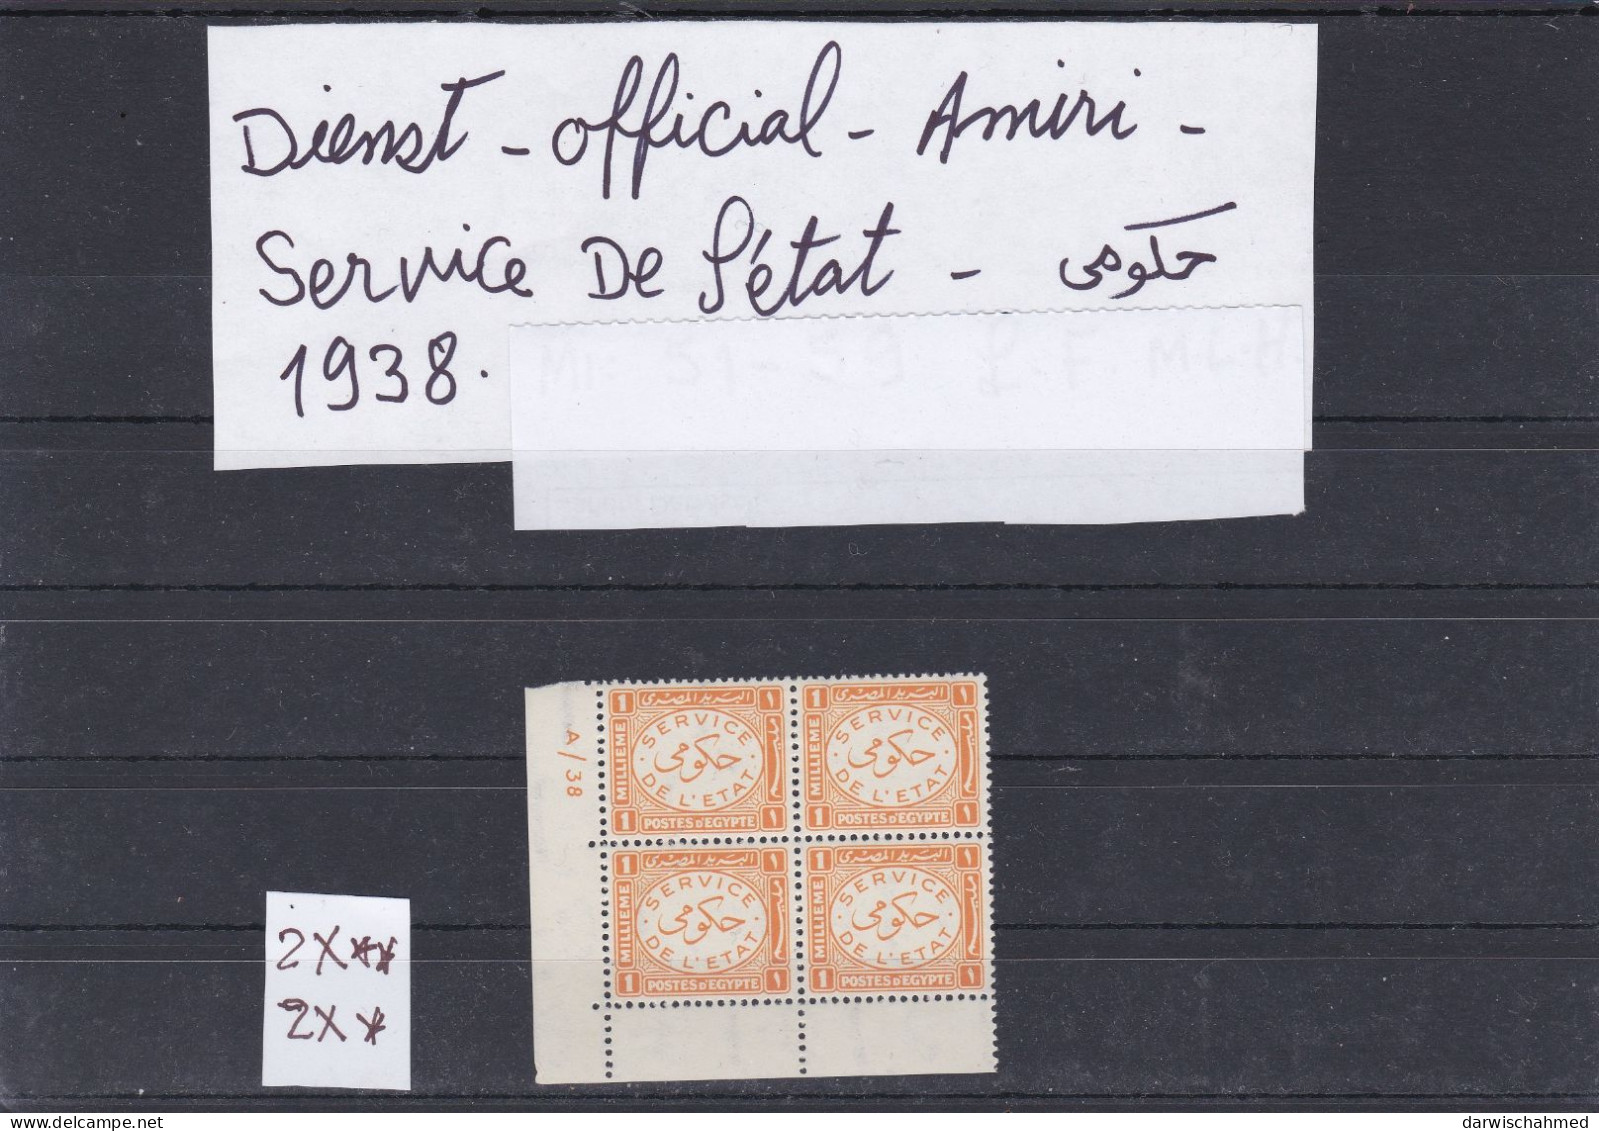 ÄGYPTEN - EGYPT - EGYPTIAN - DIENST - OFFICIAL -. AUSGABE  1938 BLOCK X 4 - MNH - MH - Service